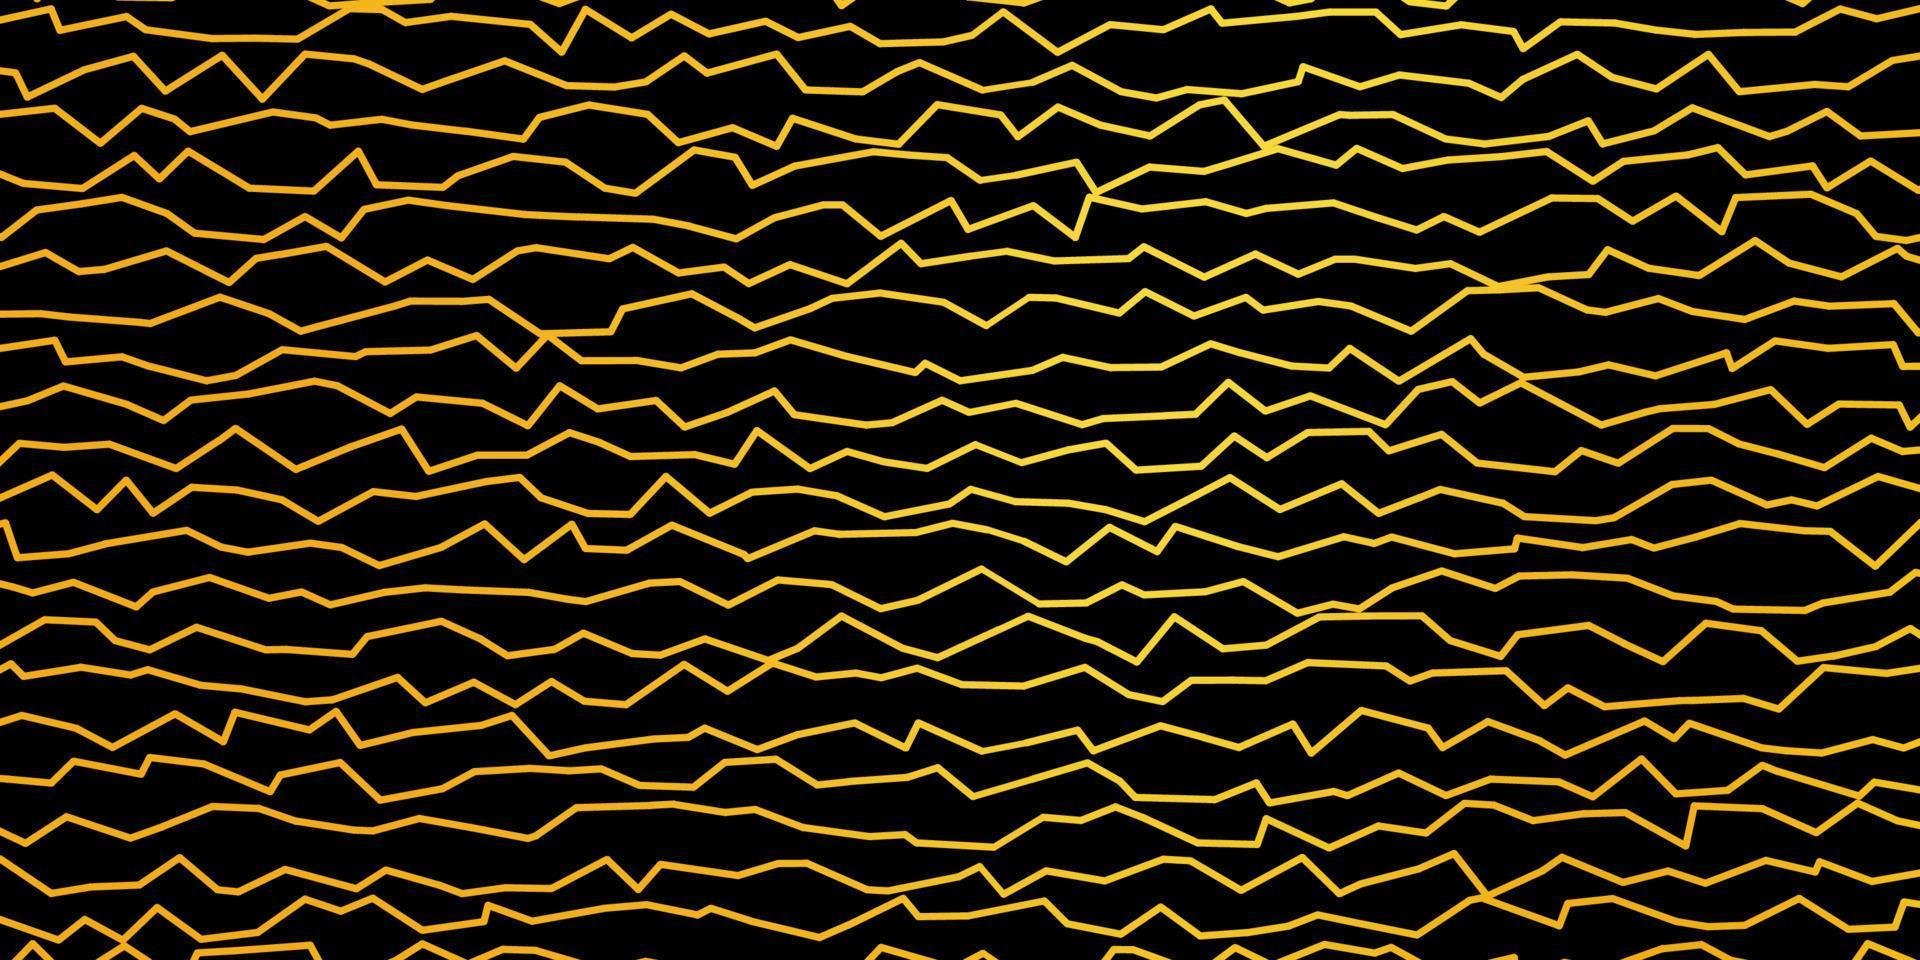 mörk gul vektor bakgrund med linjer.